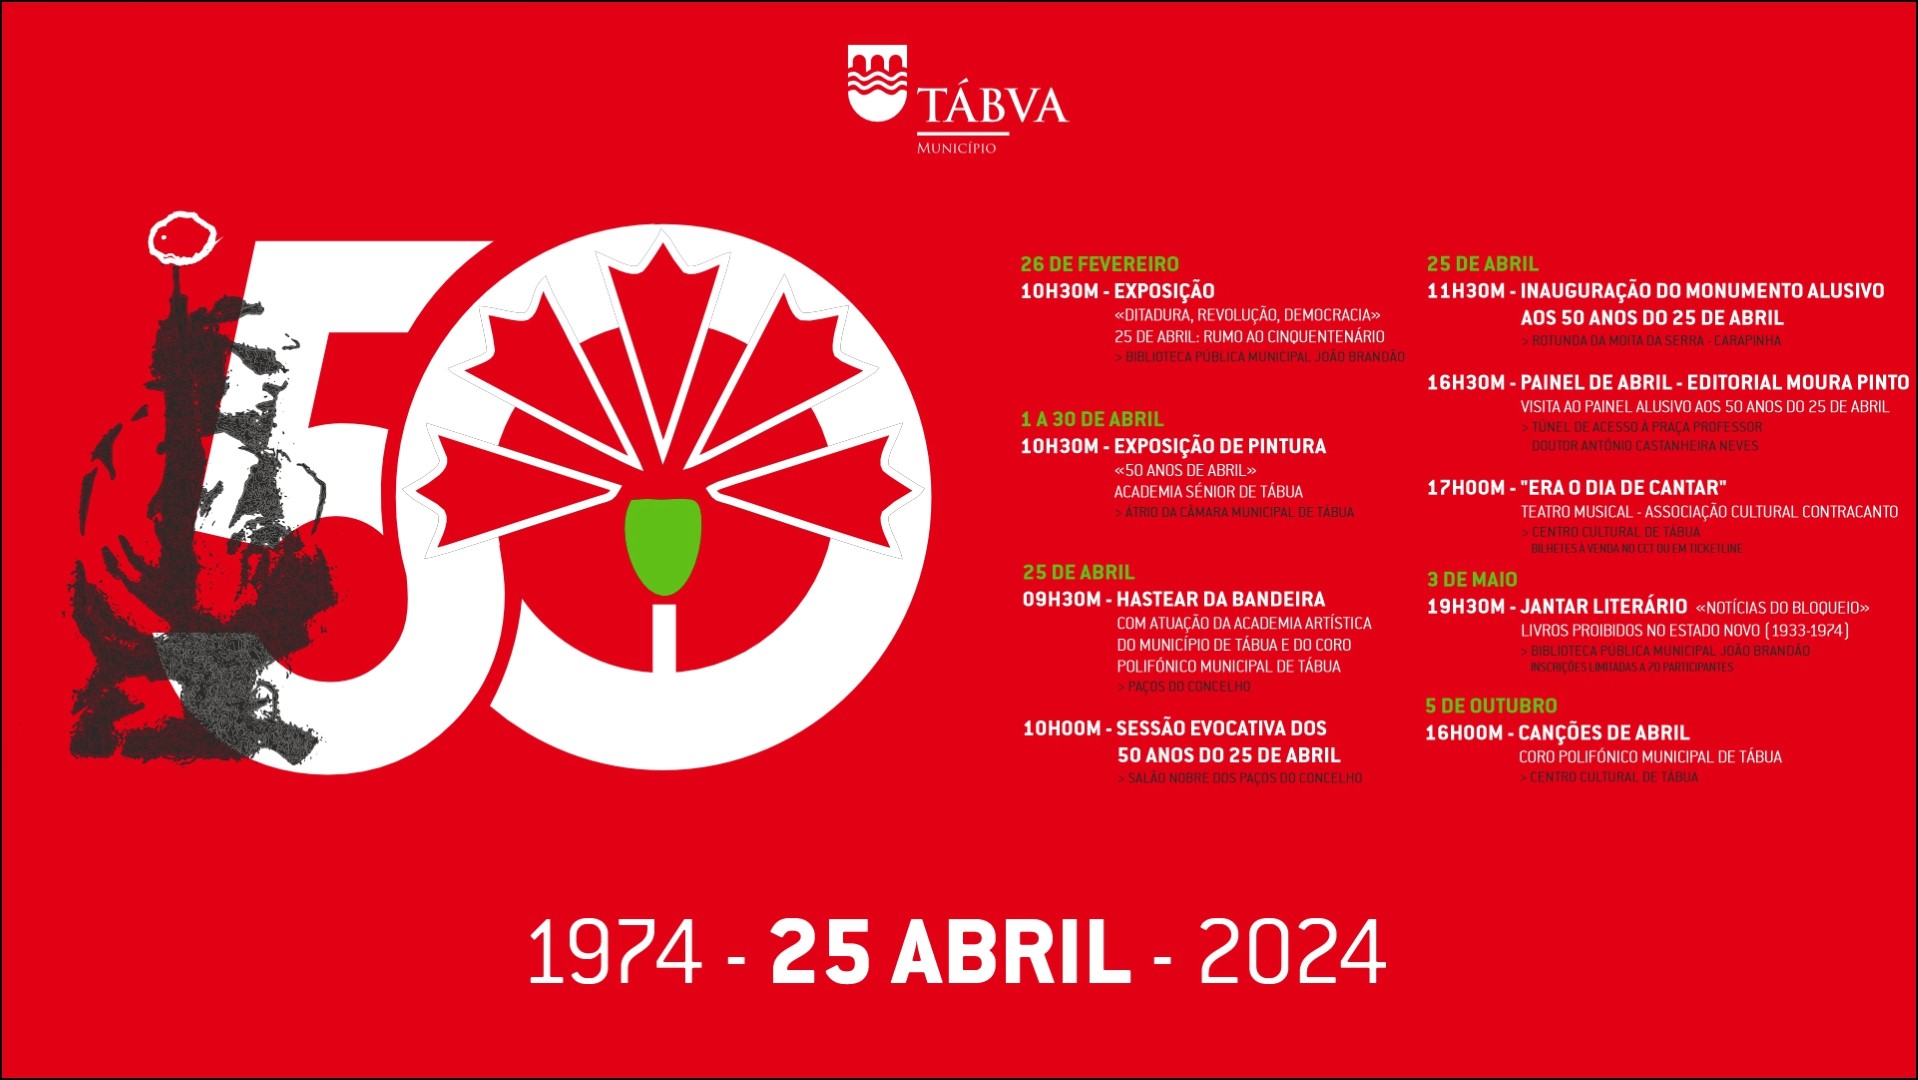 Capa do Evento Hastear da Bandeira e Sessão Evocativa dos 50 Anos do 25 de Abril